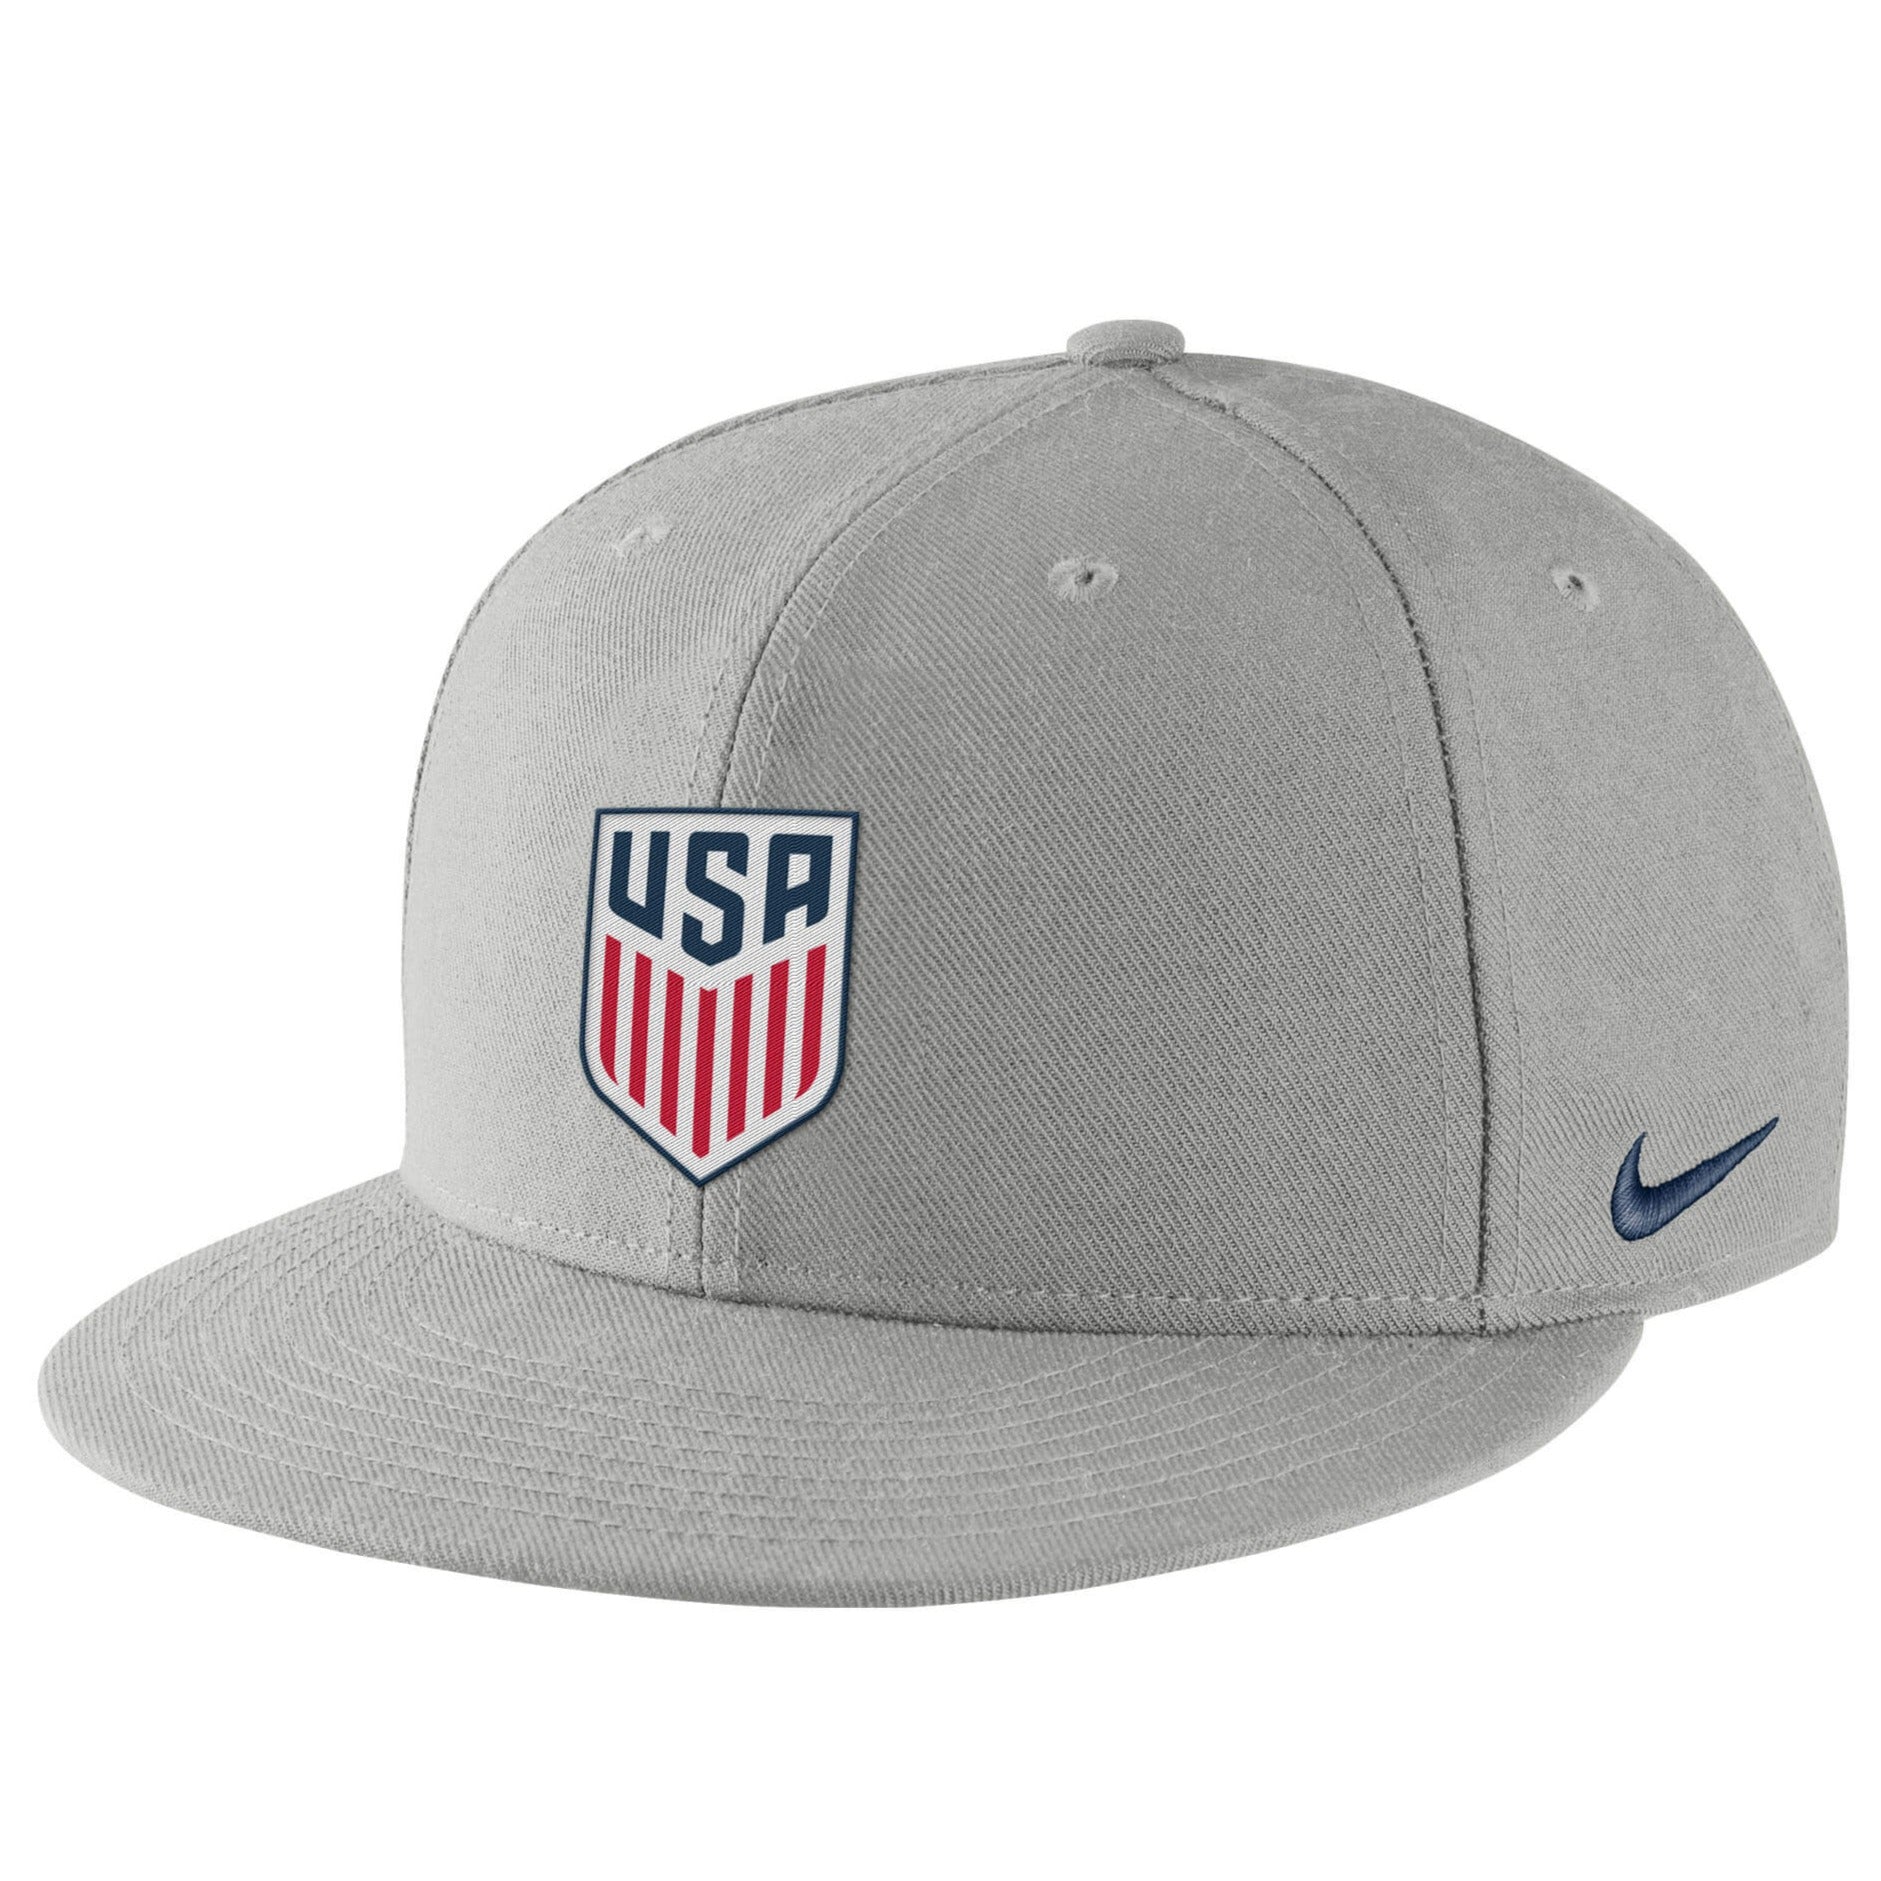 Nike USA Pro Flatbill Hat